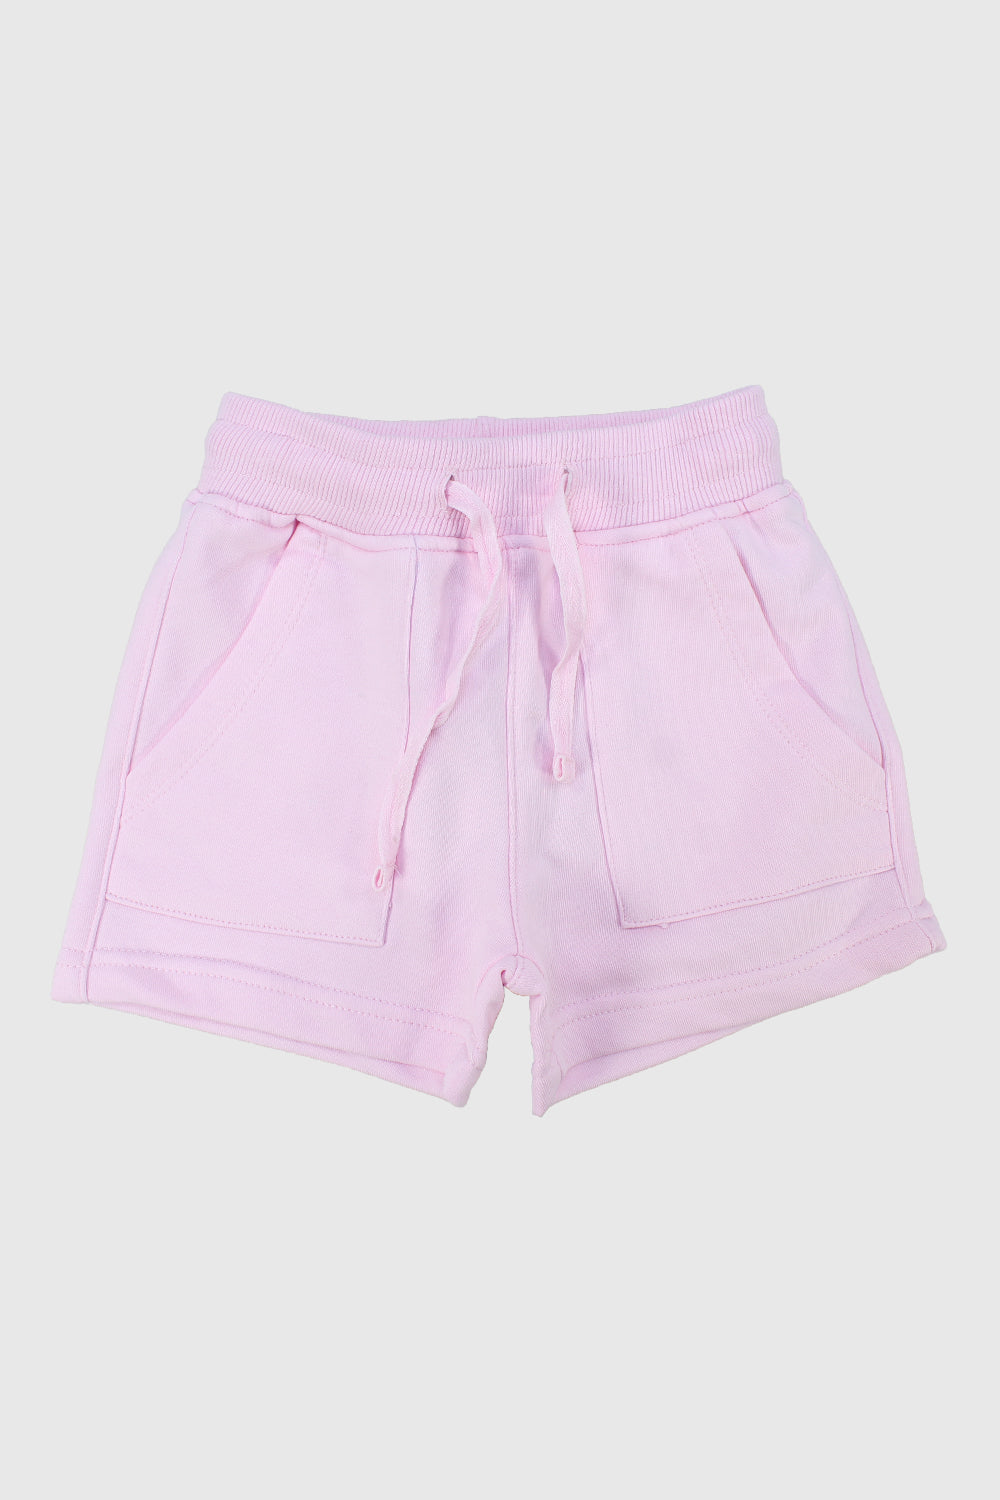 girls' pink cotton shorts